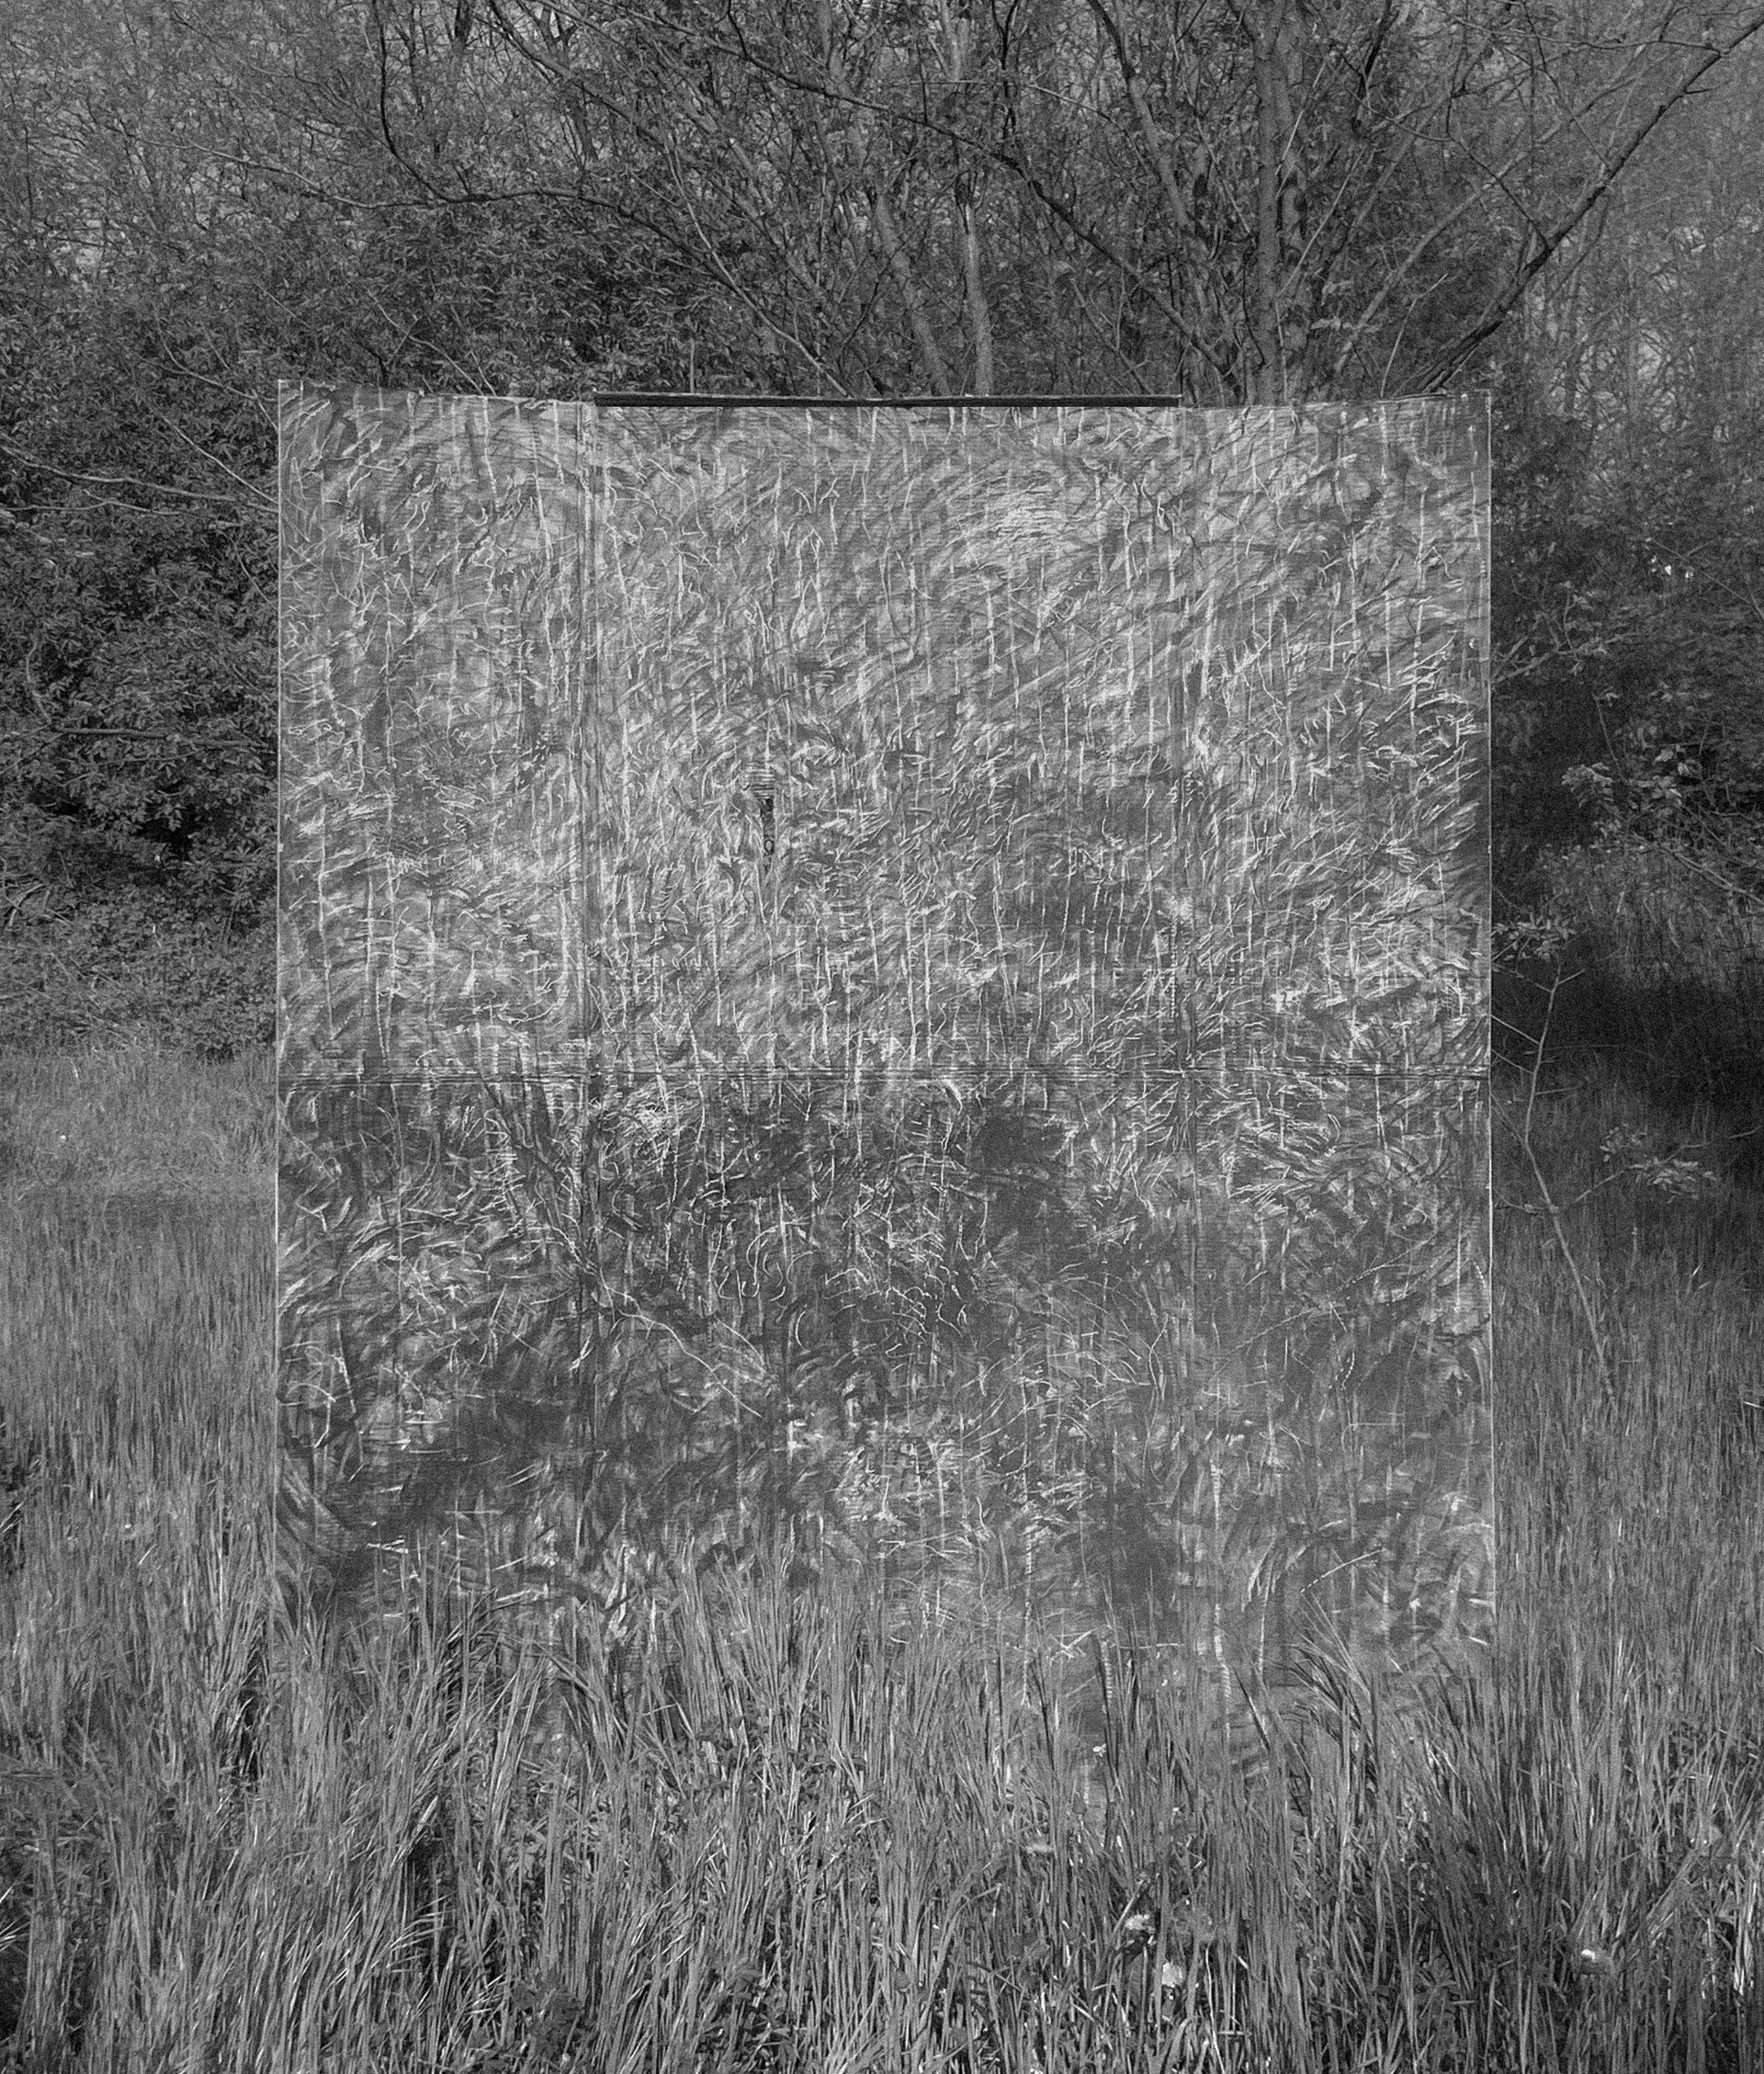 Czarno-białe zdjęcie ukazuje duży kwadratowy obraz na kartonie ukazujący kard łąki z kwitnącymi trawami. Obraz umieszczony w plenerze, łączy się z roślinnością tła i podłoża stanowiąc jej kontynuację. Trawy na obrazie zdają się ruszać  na wietrze.